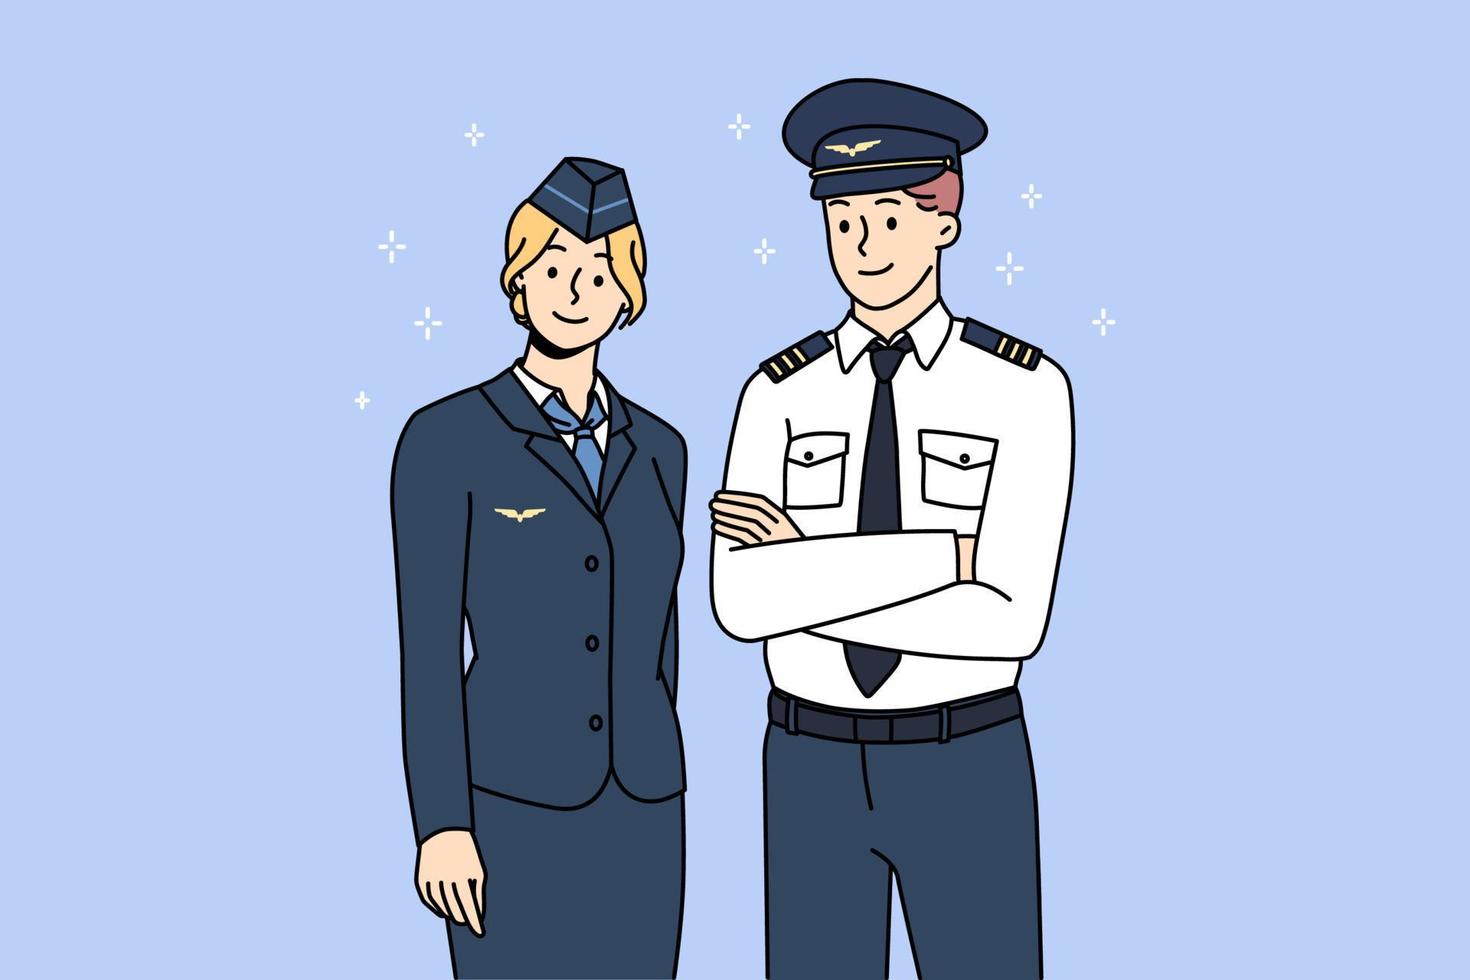 professioneel vliegtuig bemanning in uniform poseren voor afbeelding samen. portret van vliegtuig piloot en stewardess tonen mooi zo kwaliteit onderhoud. Internationale of nationaal luchtvaartmaatschappijen. vector illustratie.